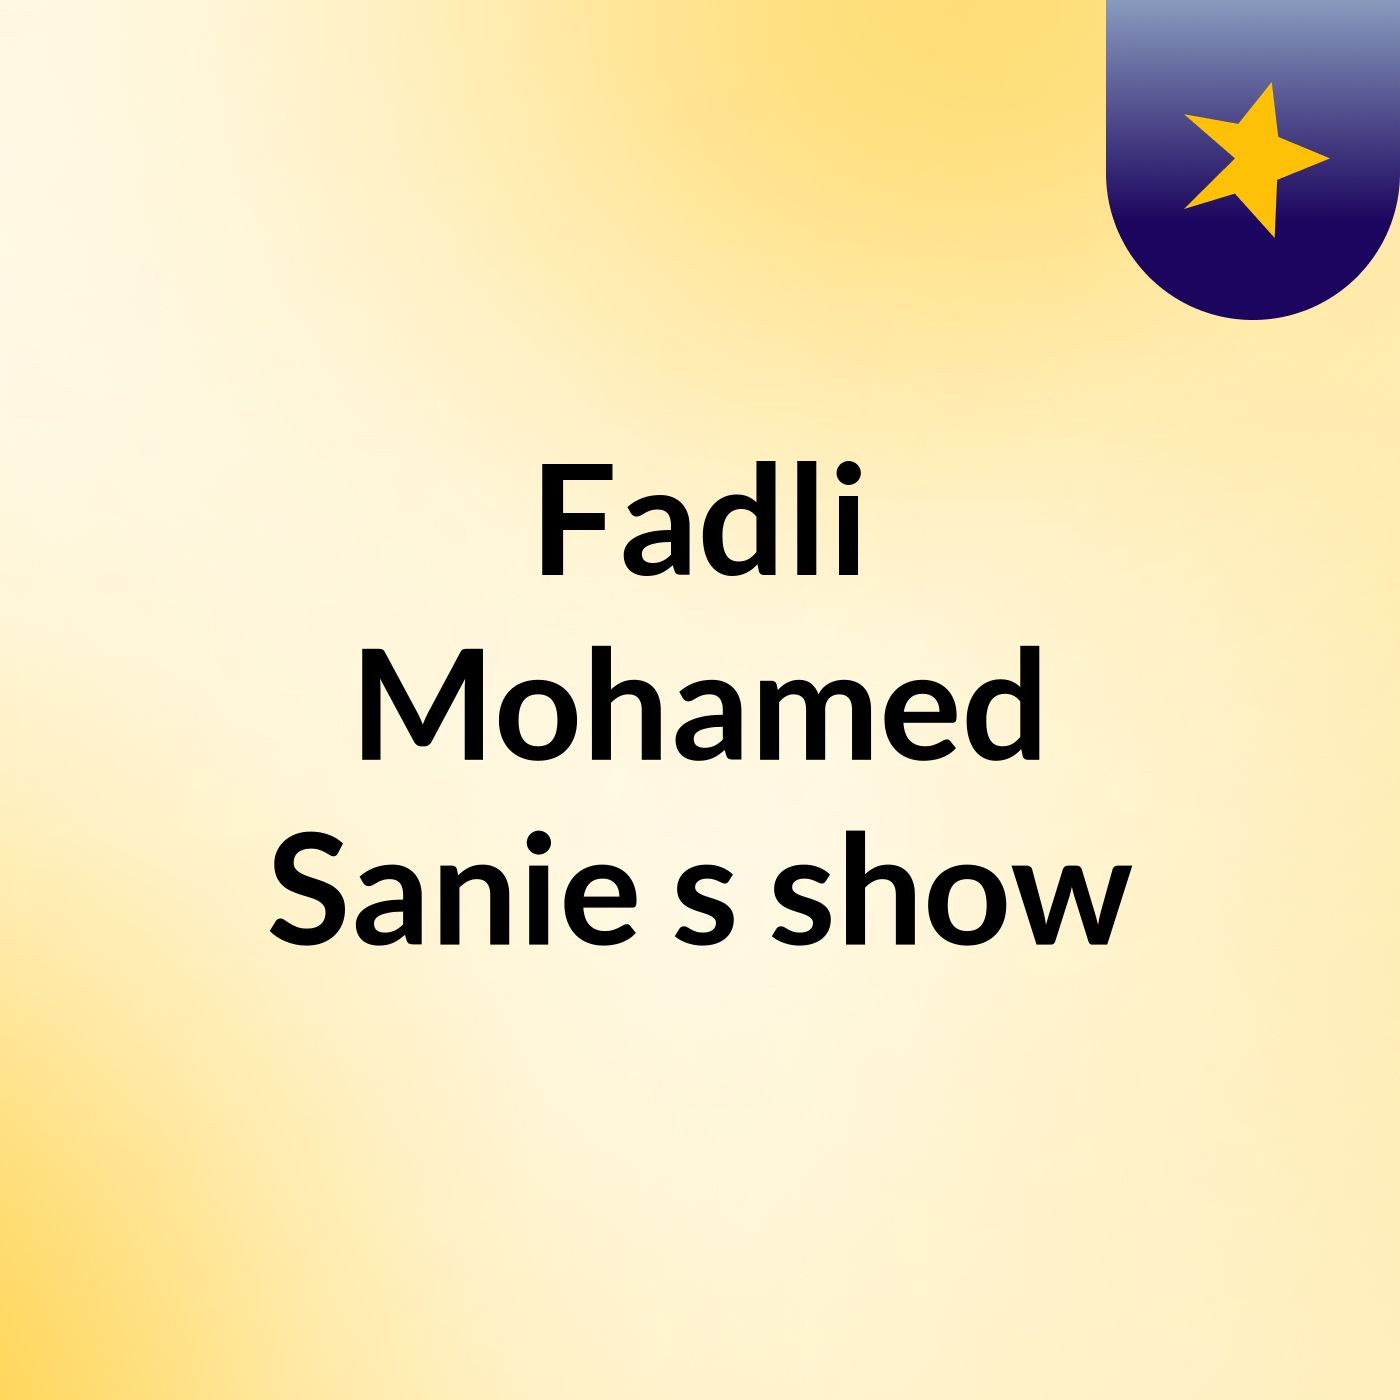 Episode 13 - Fadli Mohamed Sanie's show